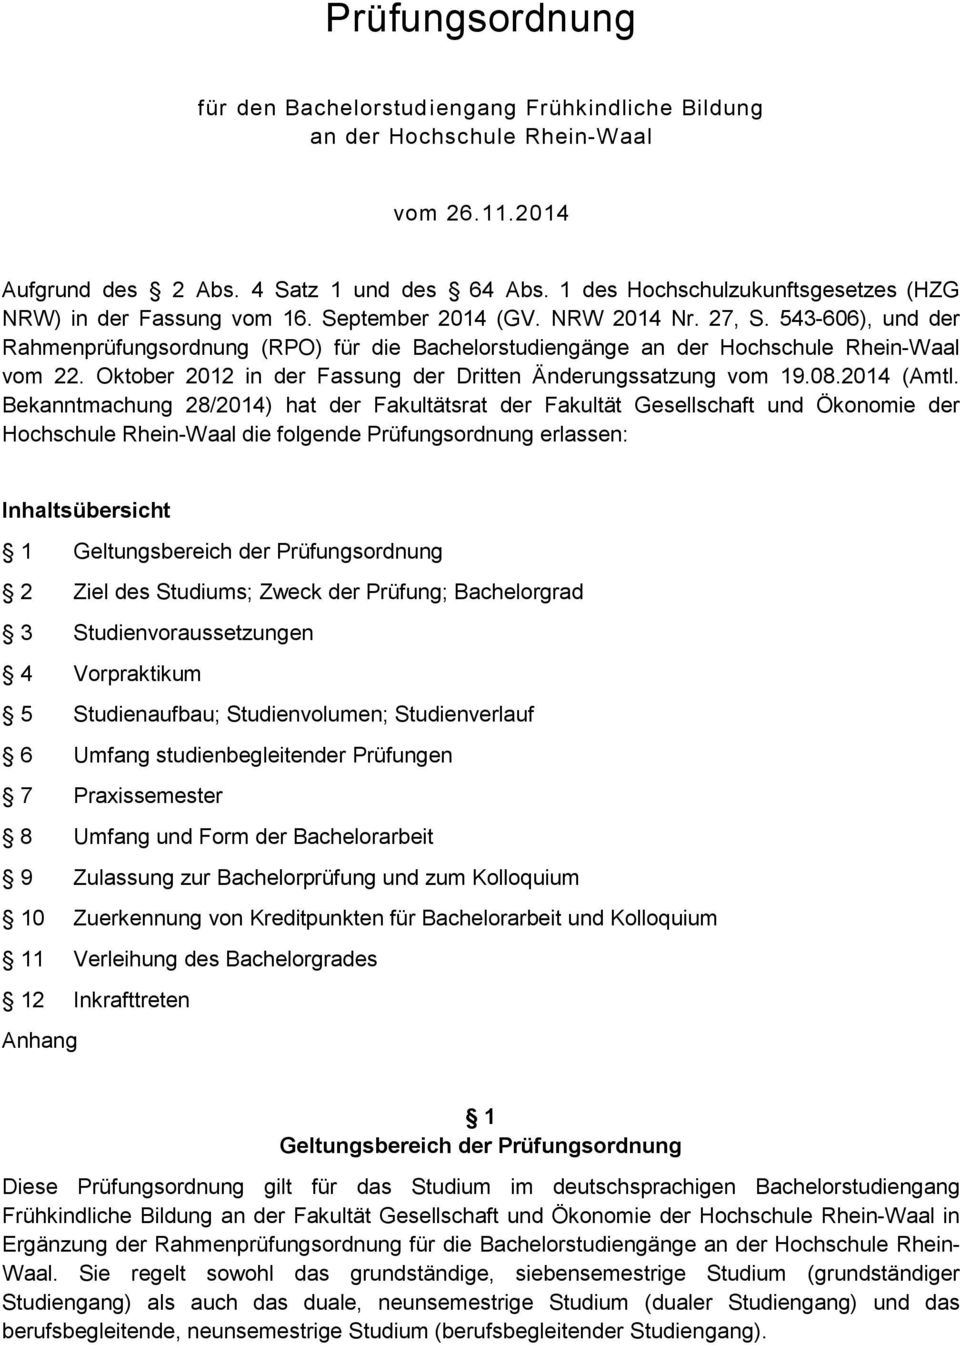 543-606), und der Rahmenprüfungsordnung (RPO) für die Bachelorstudiengänge an der Hochschule Rhein-Waal vom. Oktober 01 in der Fassung der Dritten Änderungssatzung vom 19.08.014 (Amtl.